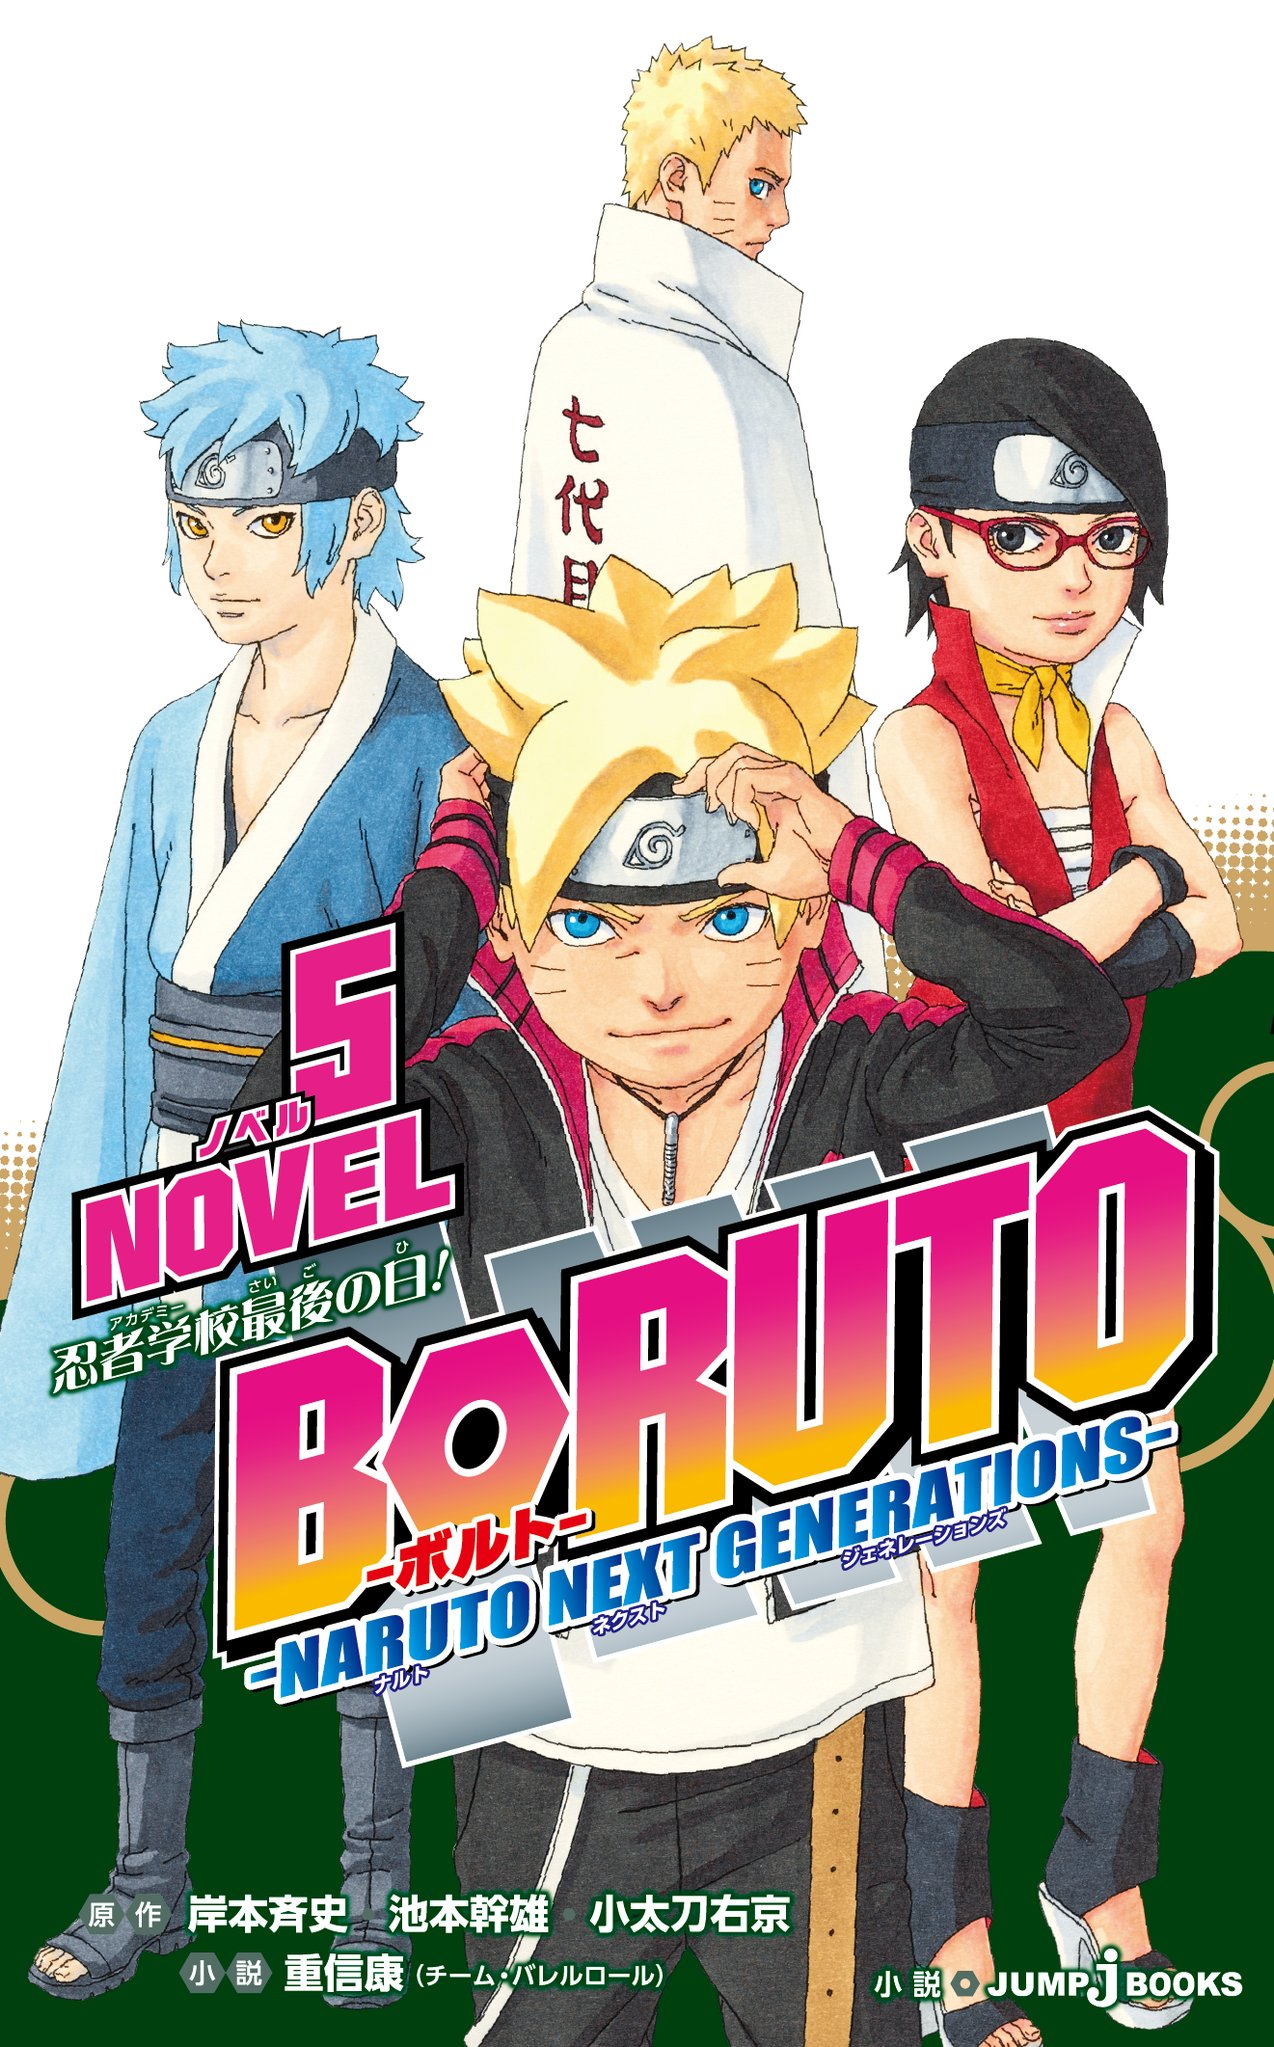 Filme Boruto (filho de Naruto) parte 5